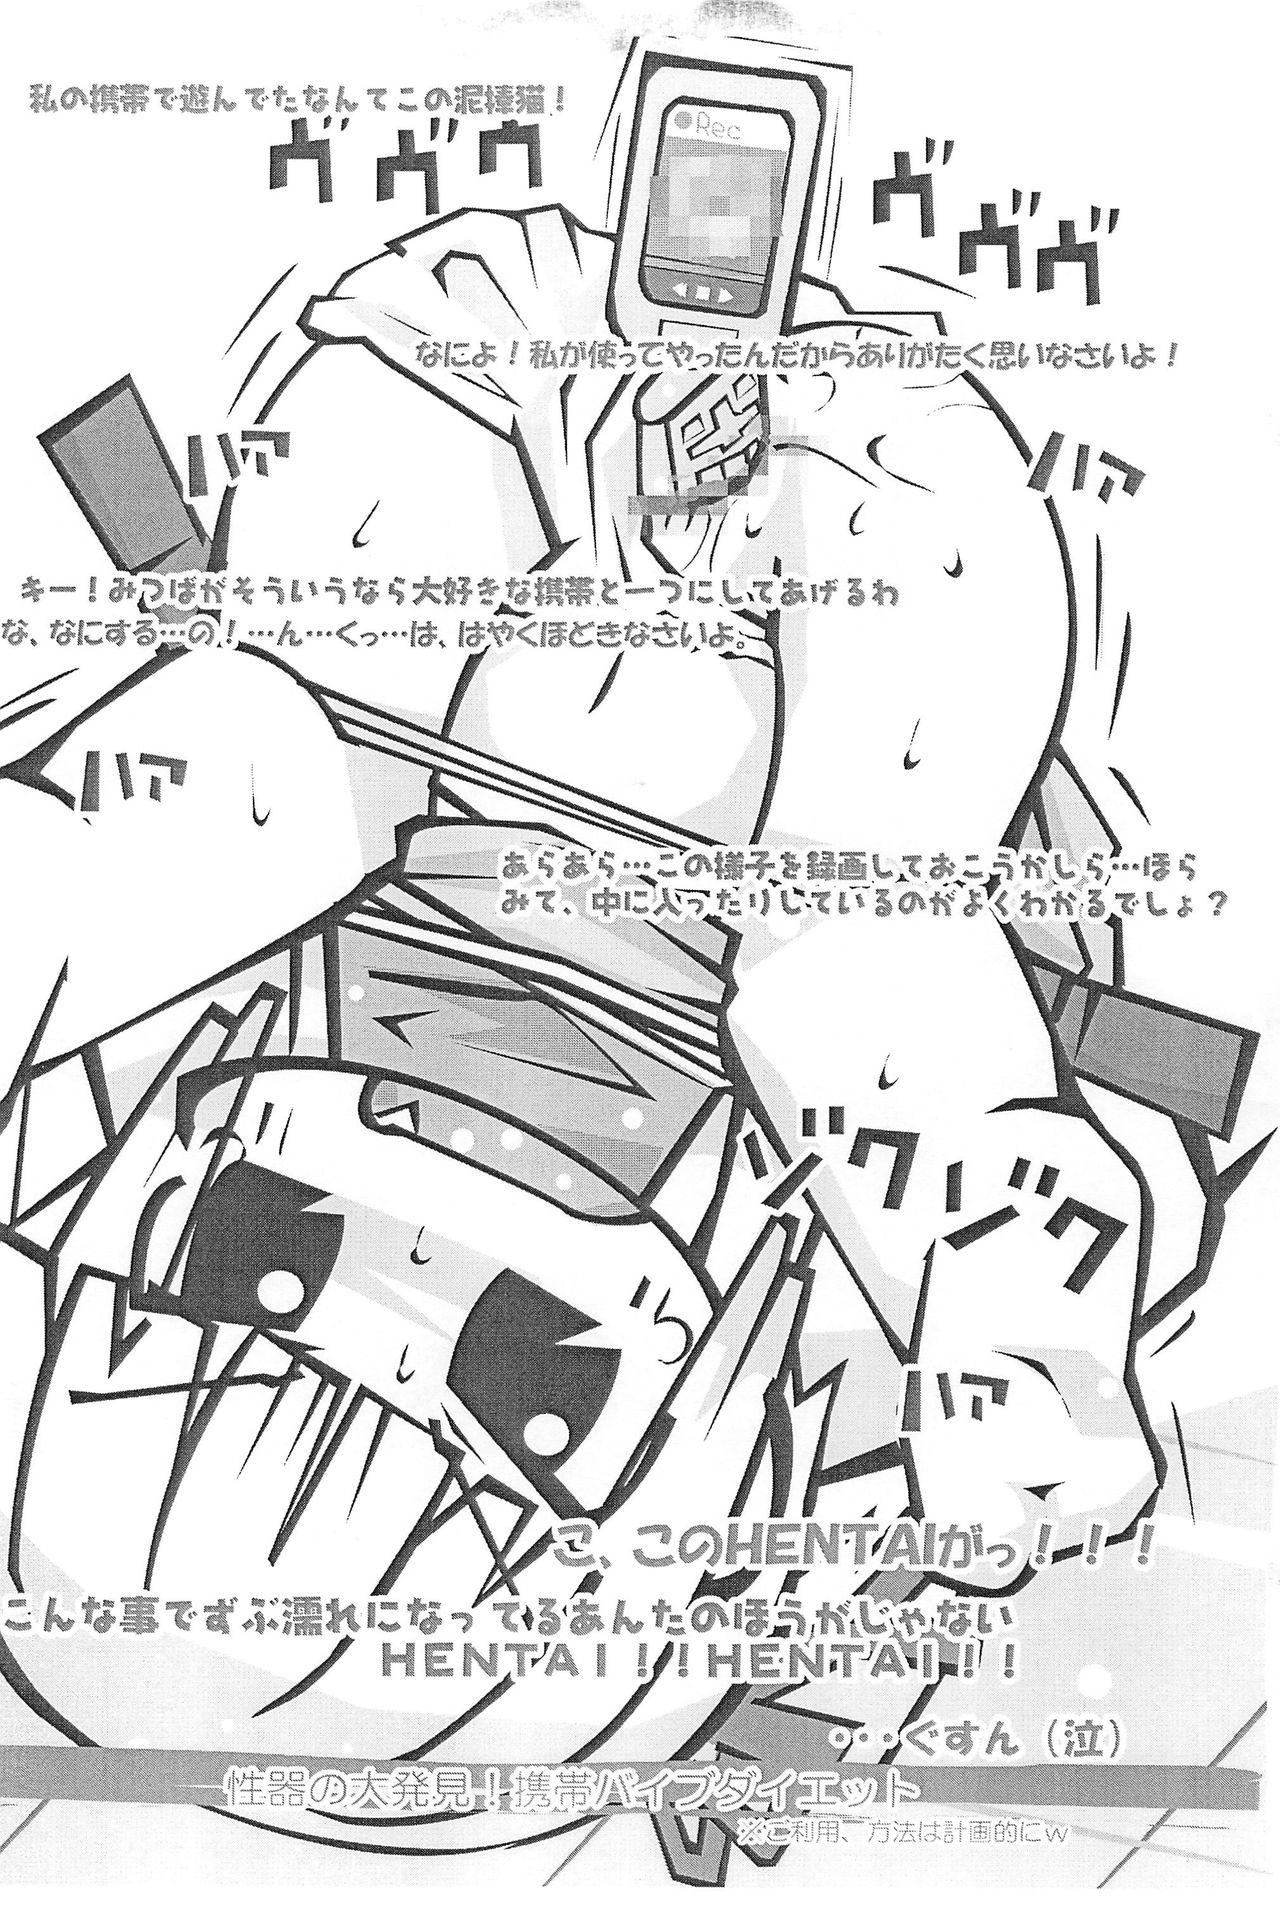 Rough Sex Honiki-Hentai 6 no 3 - Mitsudomoe One - Page 9